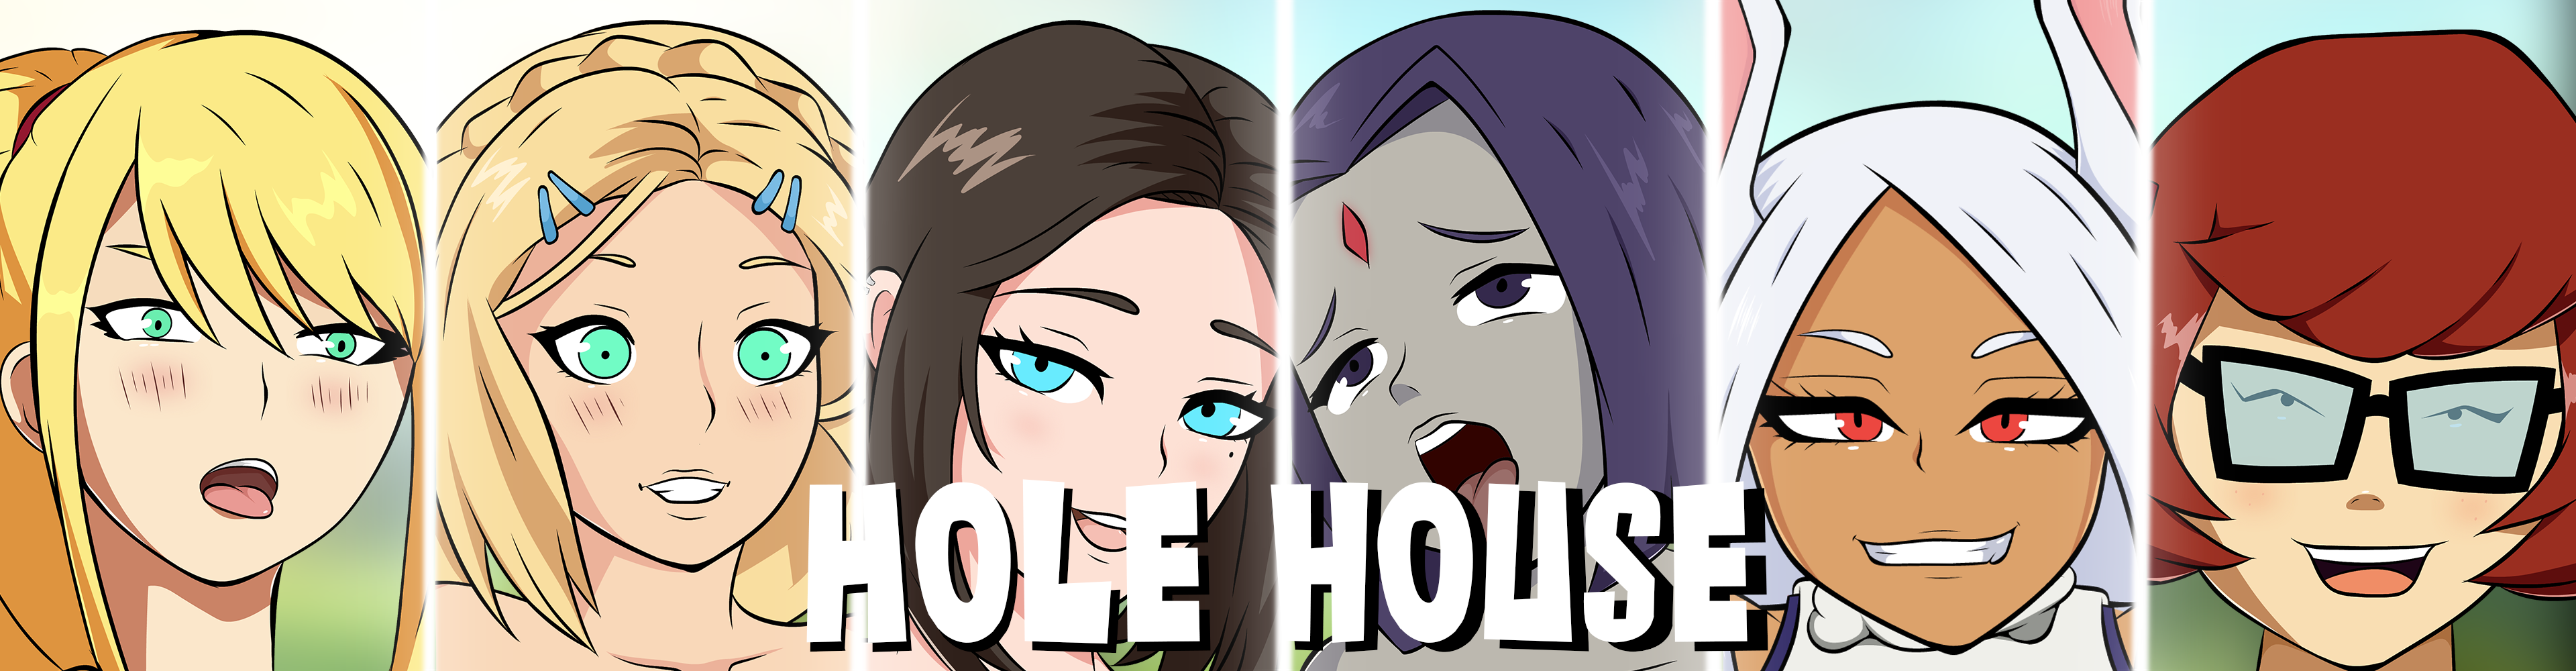 Hole House